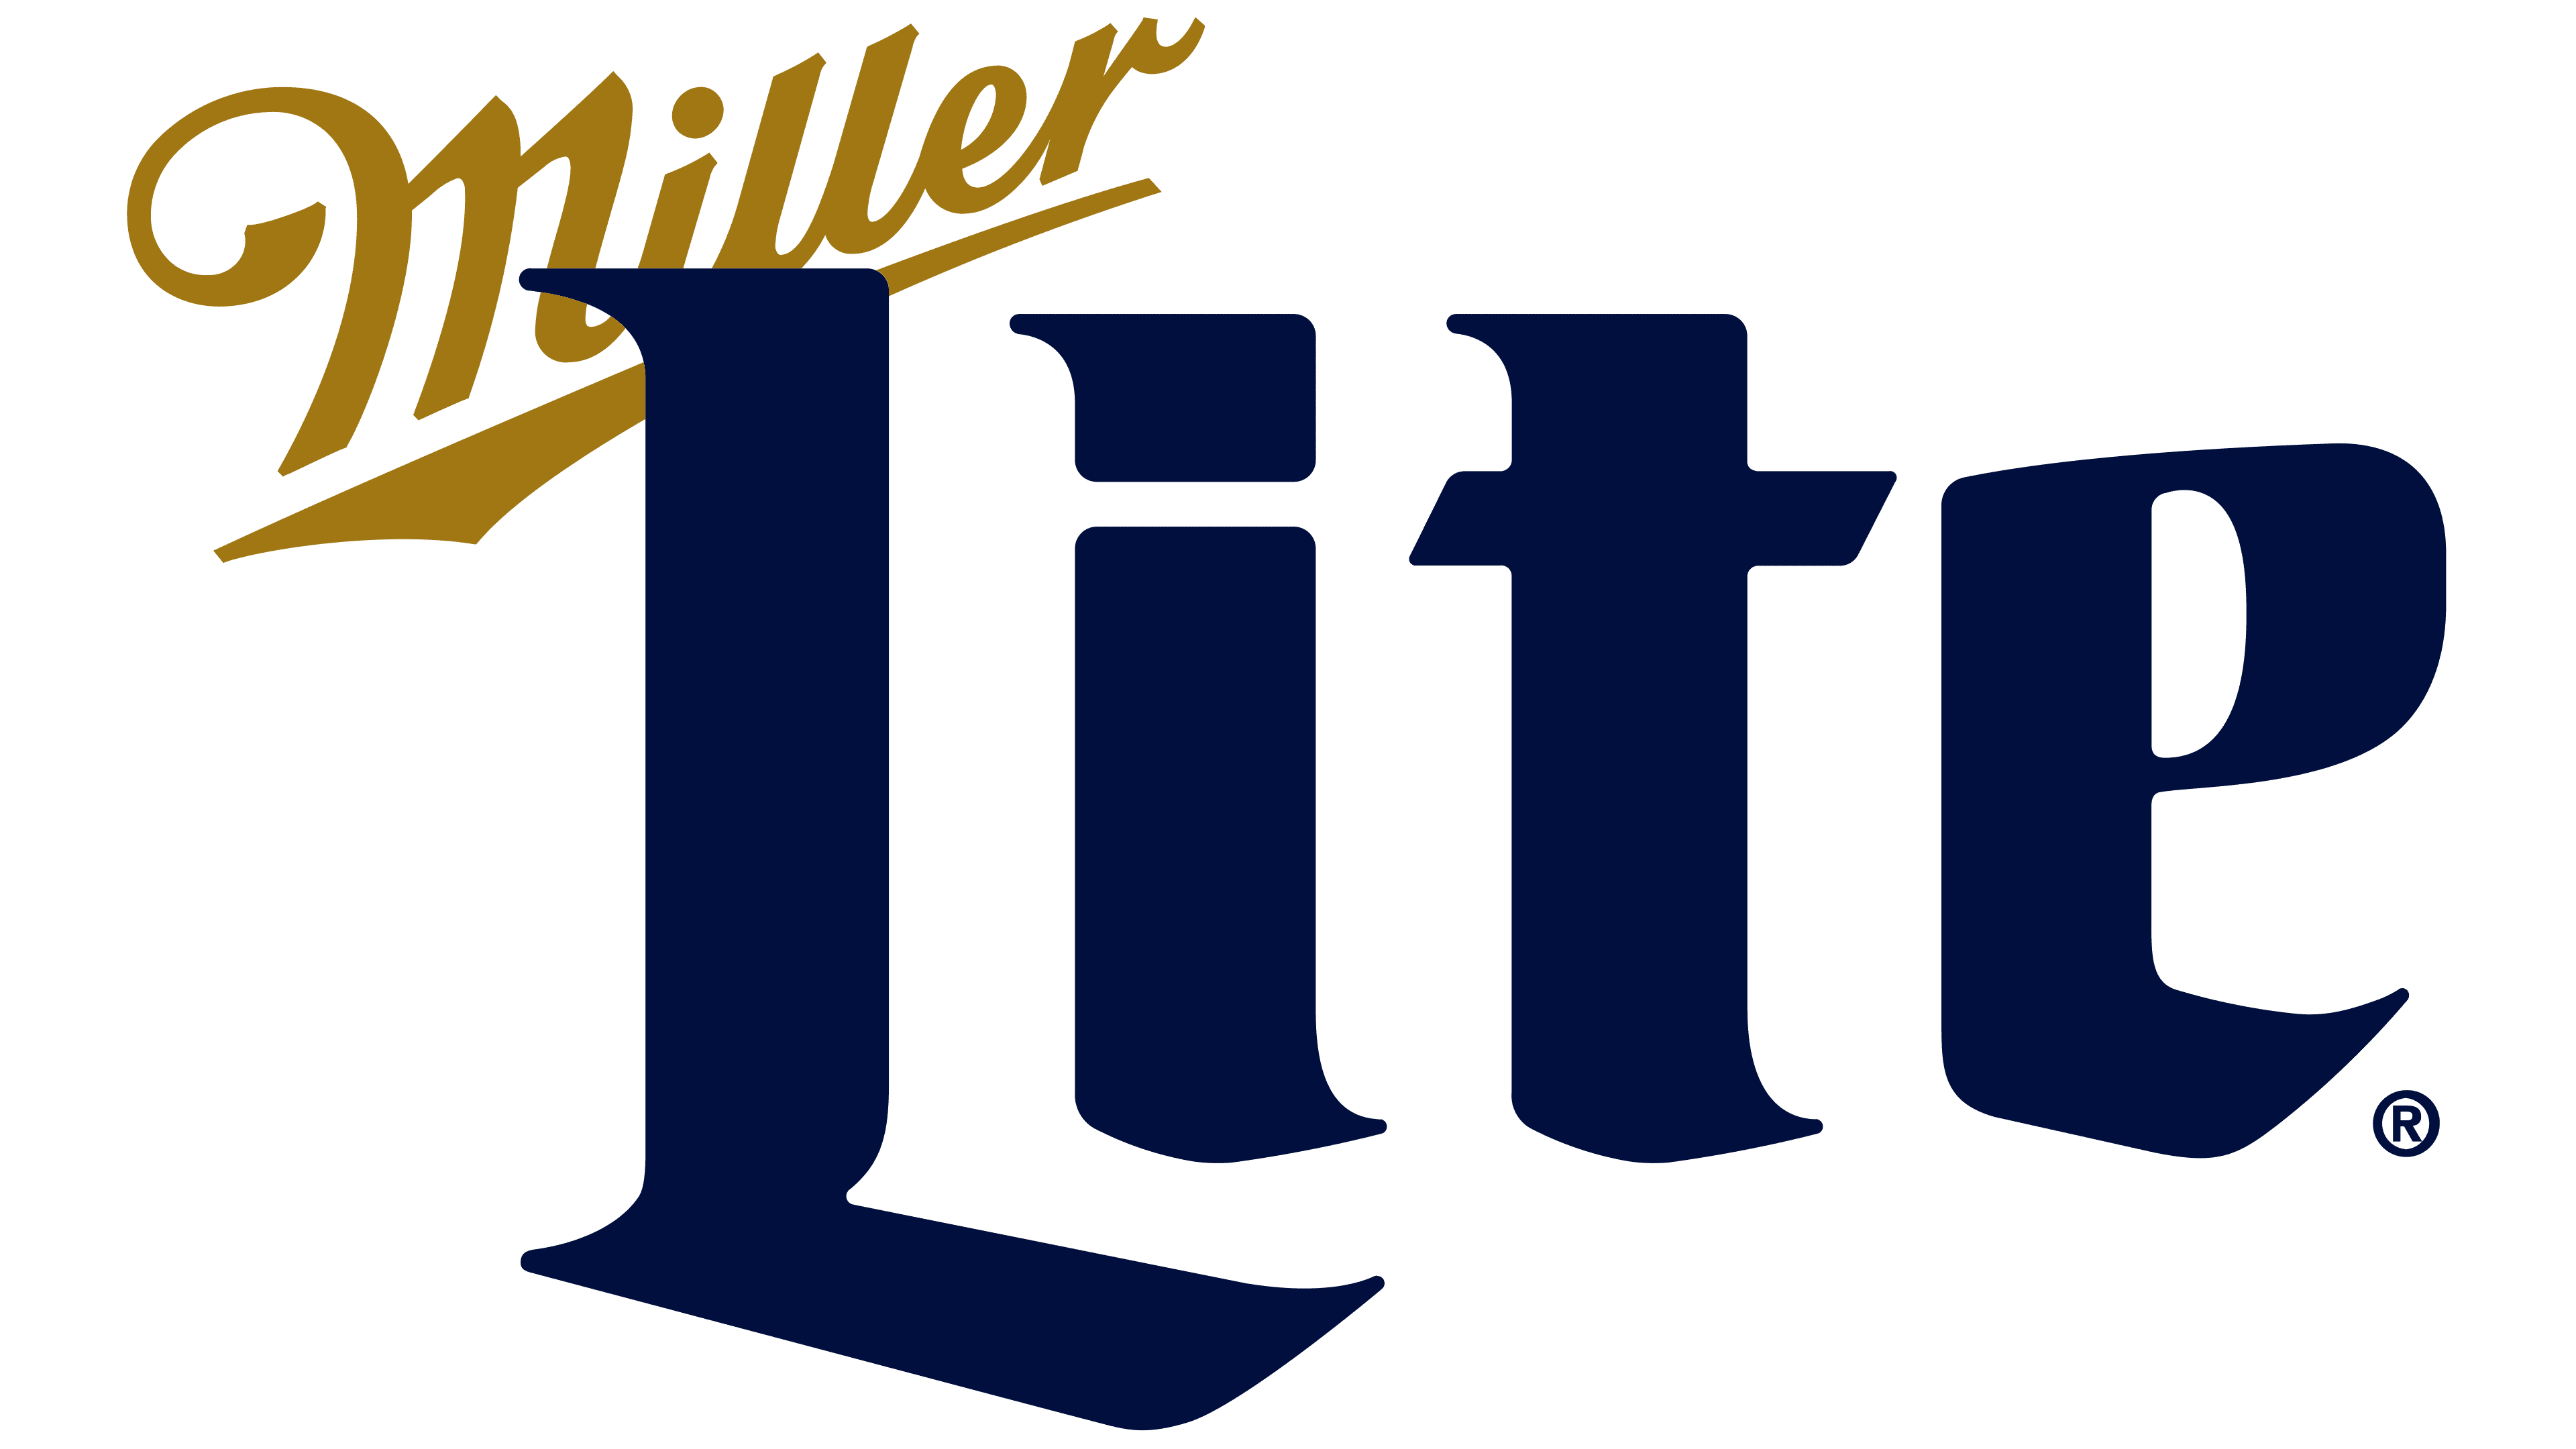 Lite Beer Logo - Storia e significato dell'emblema del marchio.